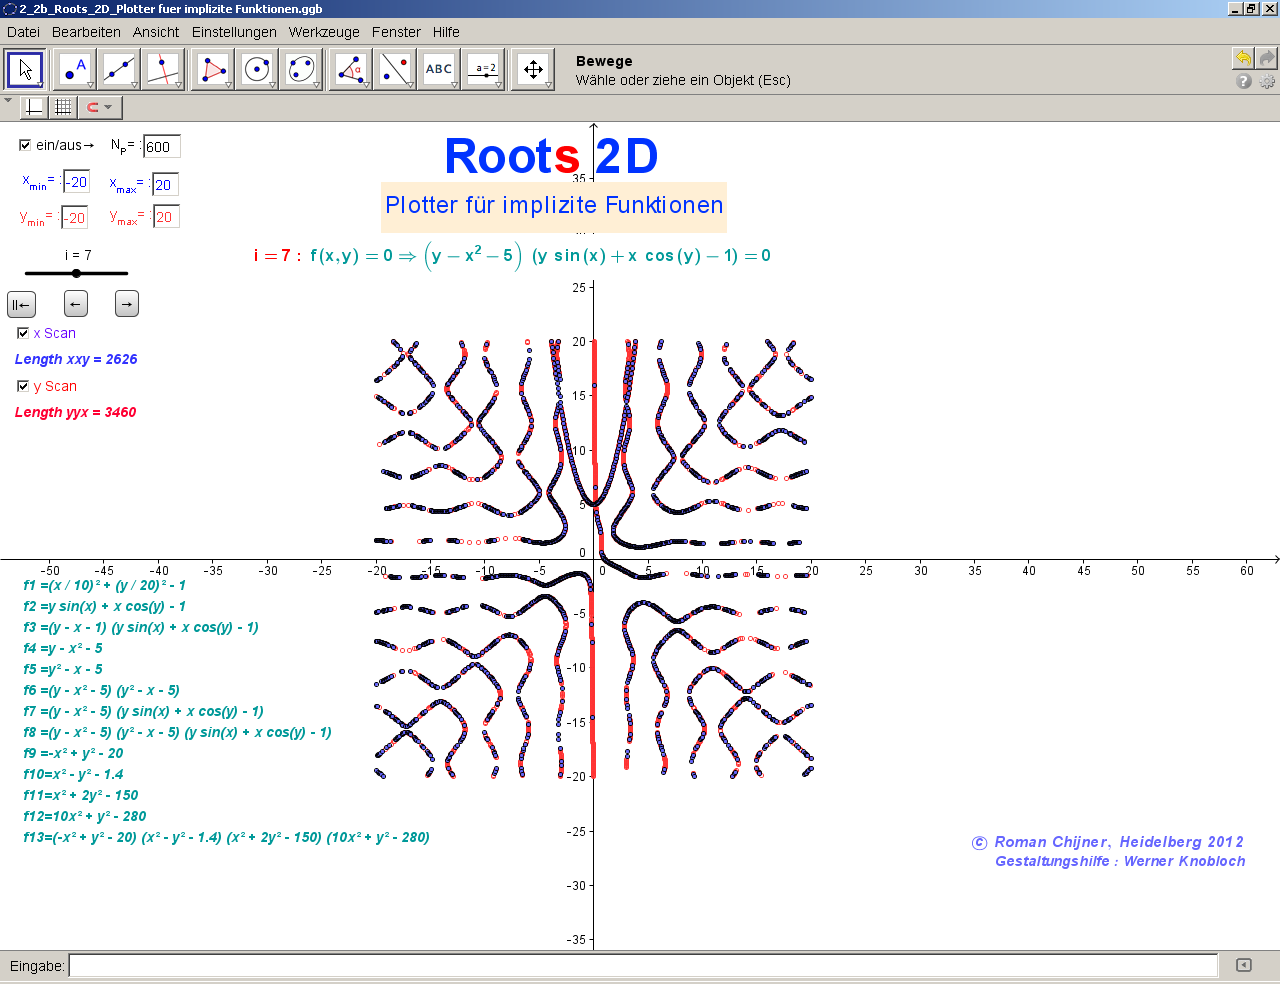 2_2b_Roots_2D_Plotter_implizite_Funktionen